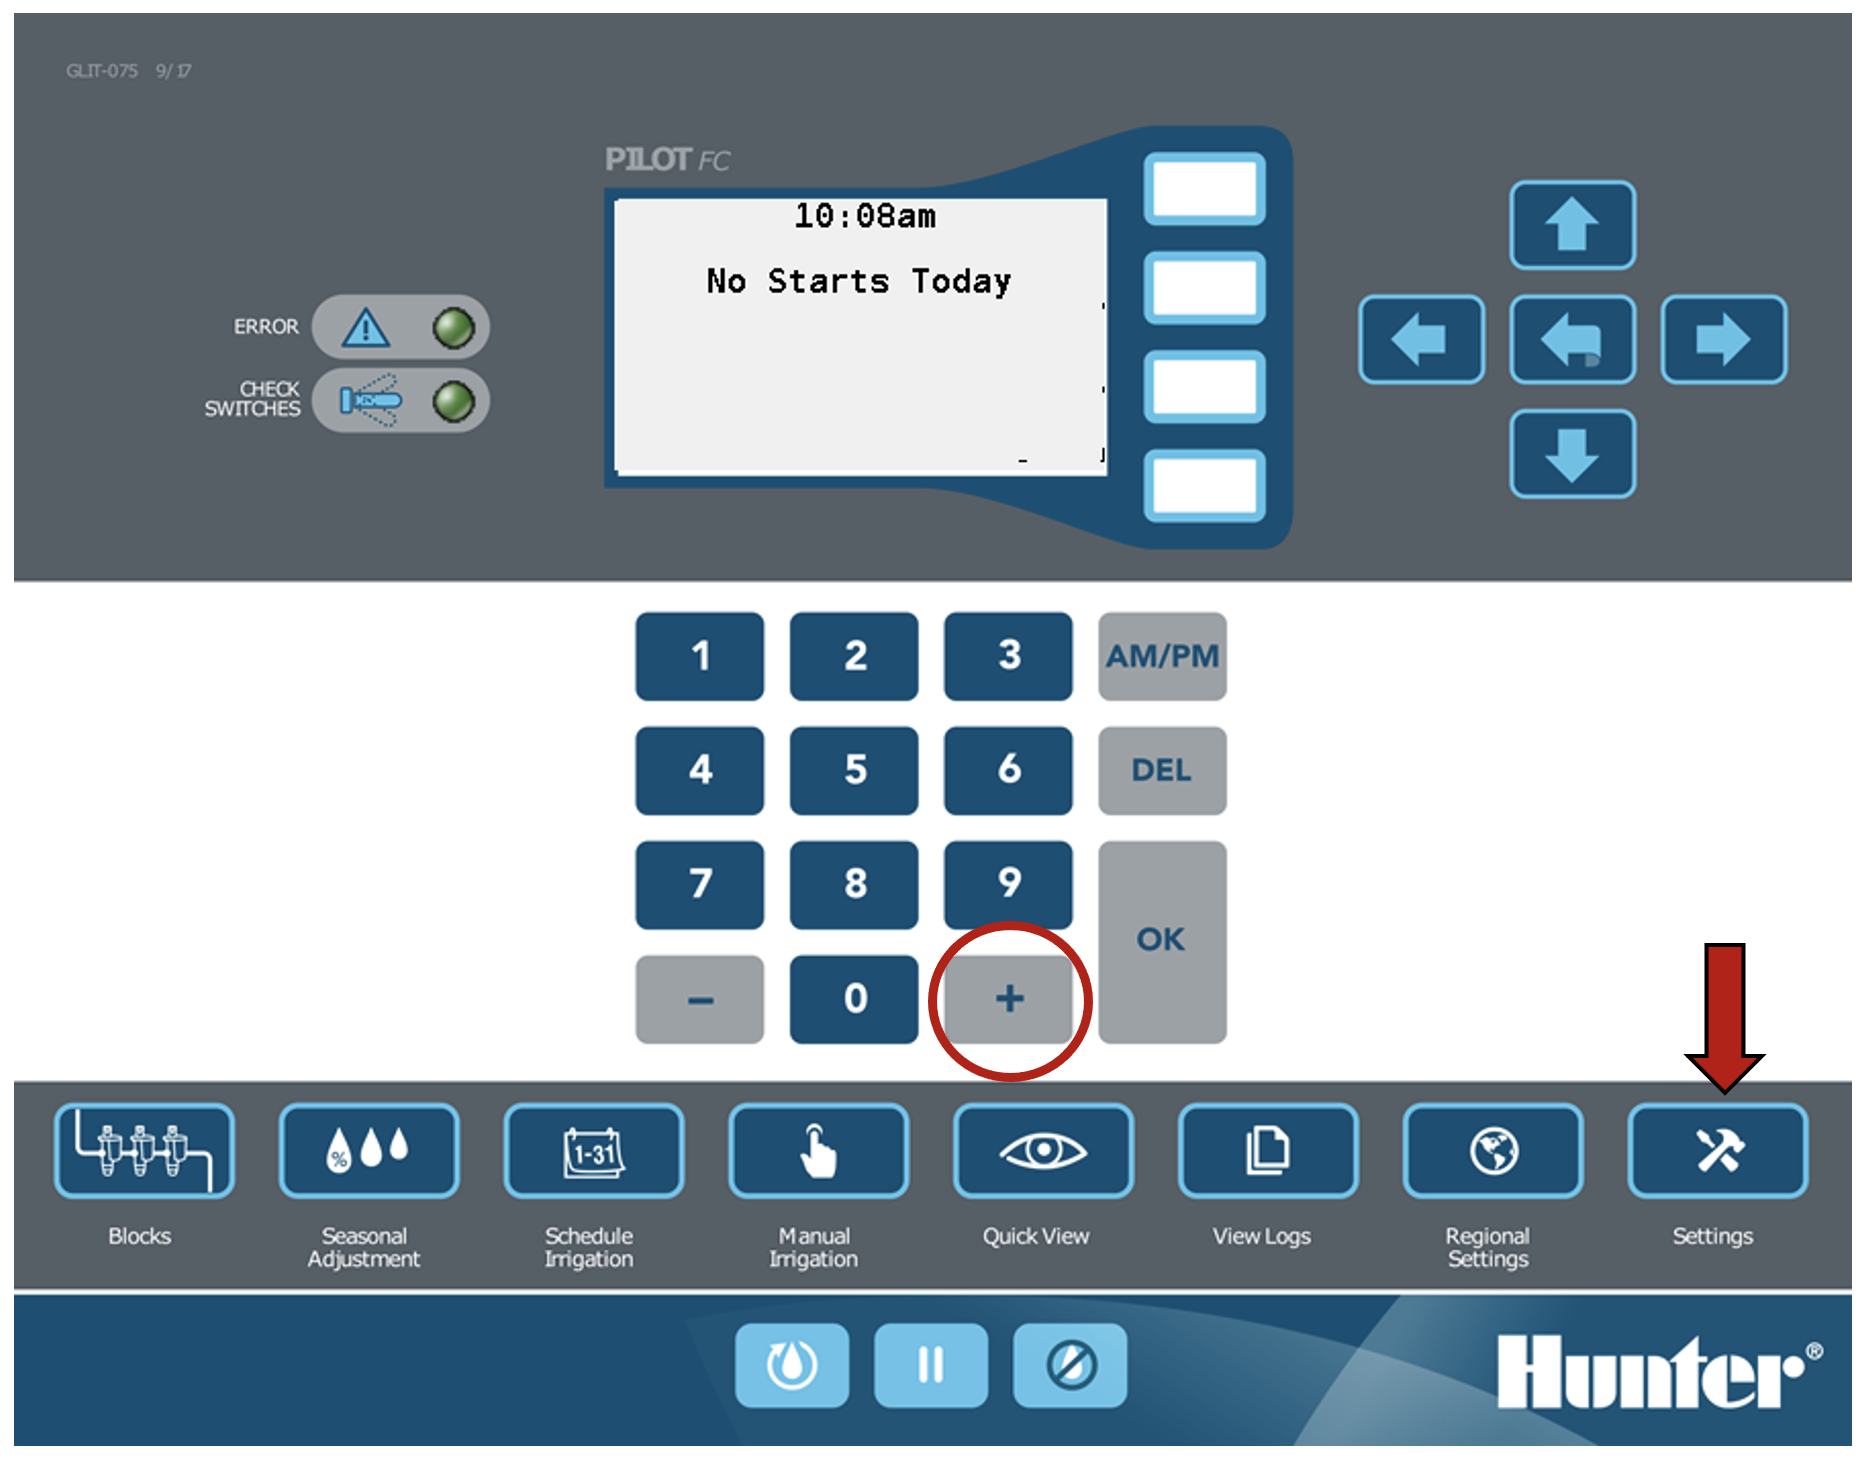 Imagen de la carátula que resalta el botón de configuración y el botón más.